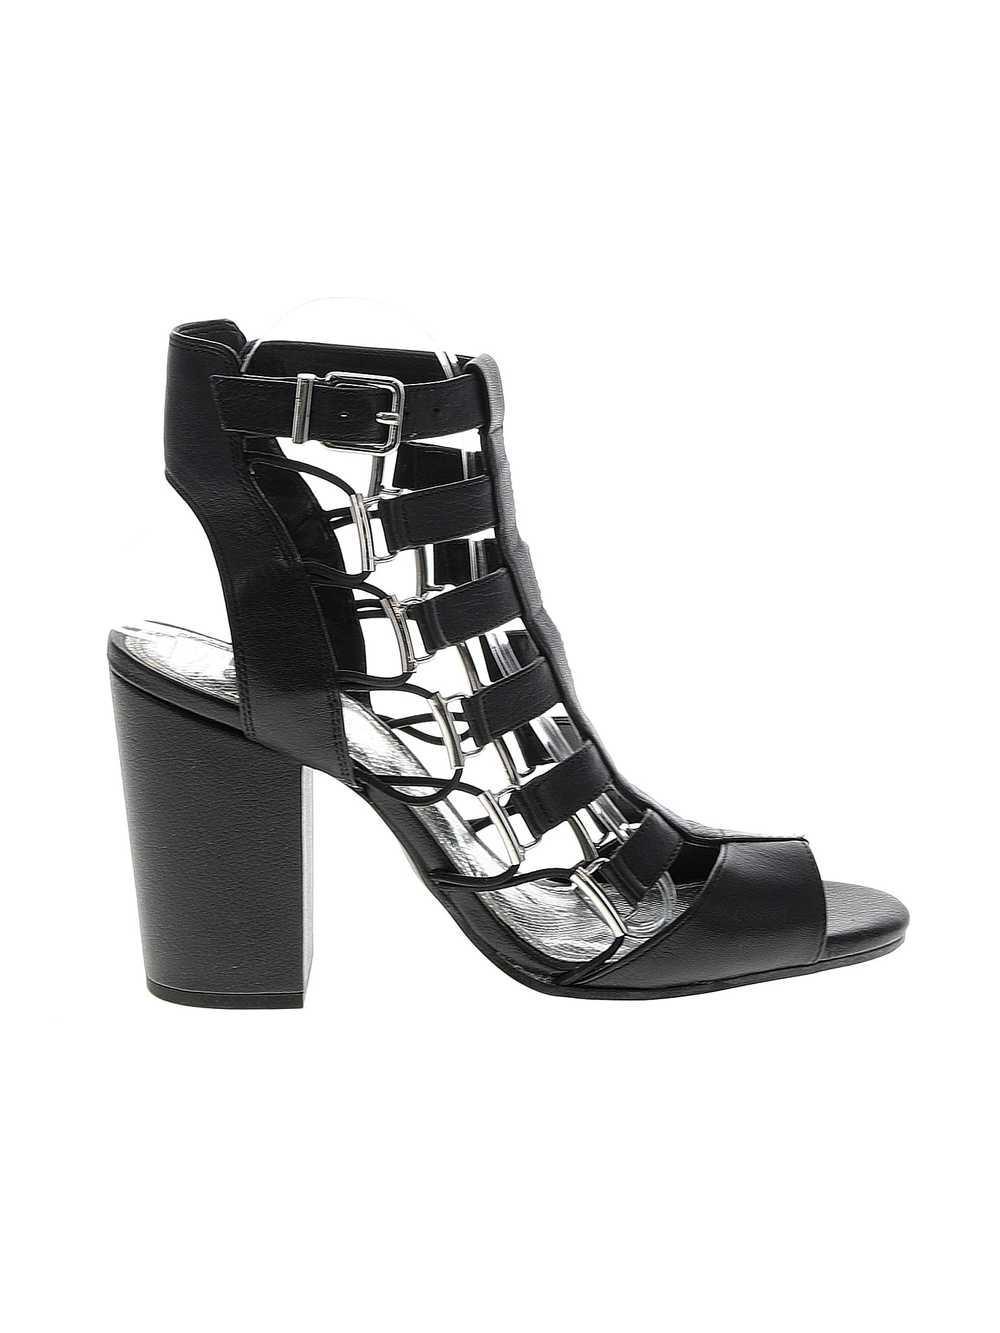 Gianni Bini Women Black Heels 9.5 - image 1